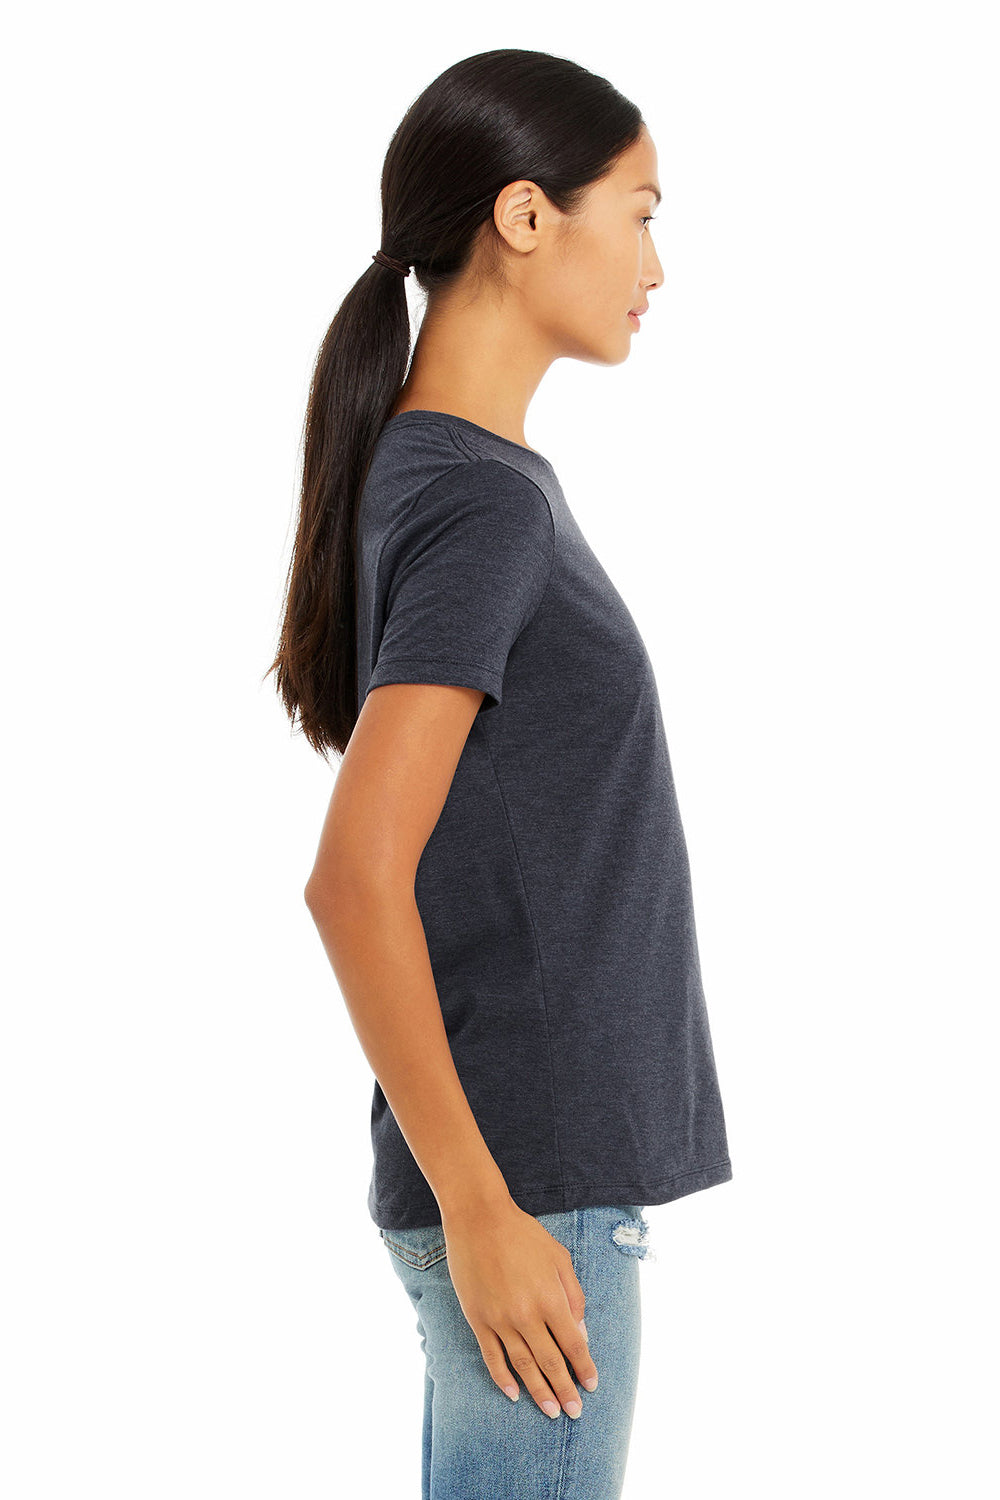 Bella + Canvas BC6400CVC/6400CVC Womens CVC Short Sleeve Crewneck T-Shirt Heather Navy Blue Model Side